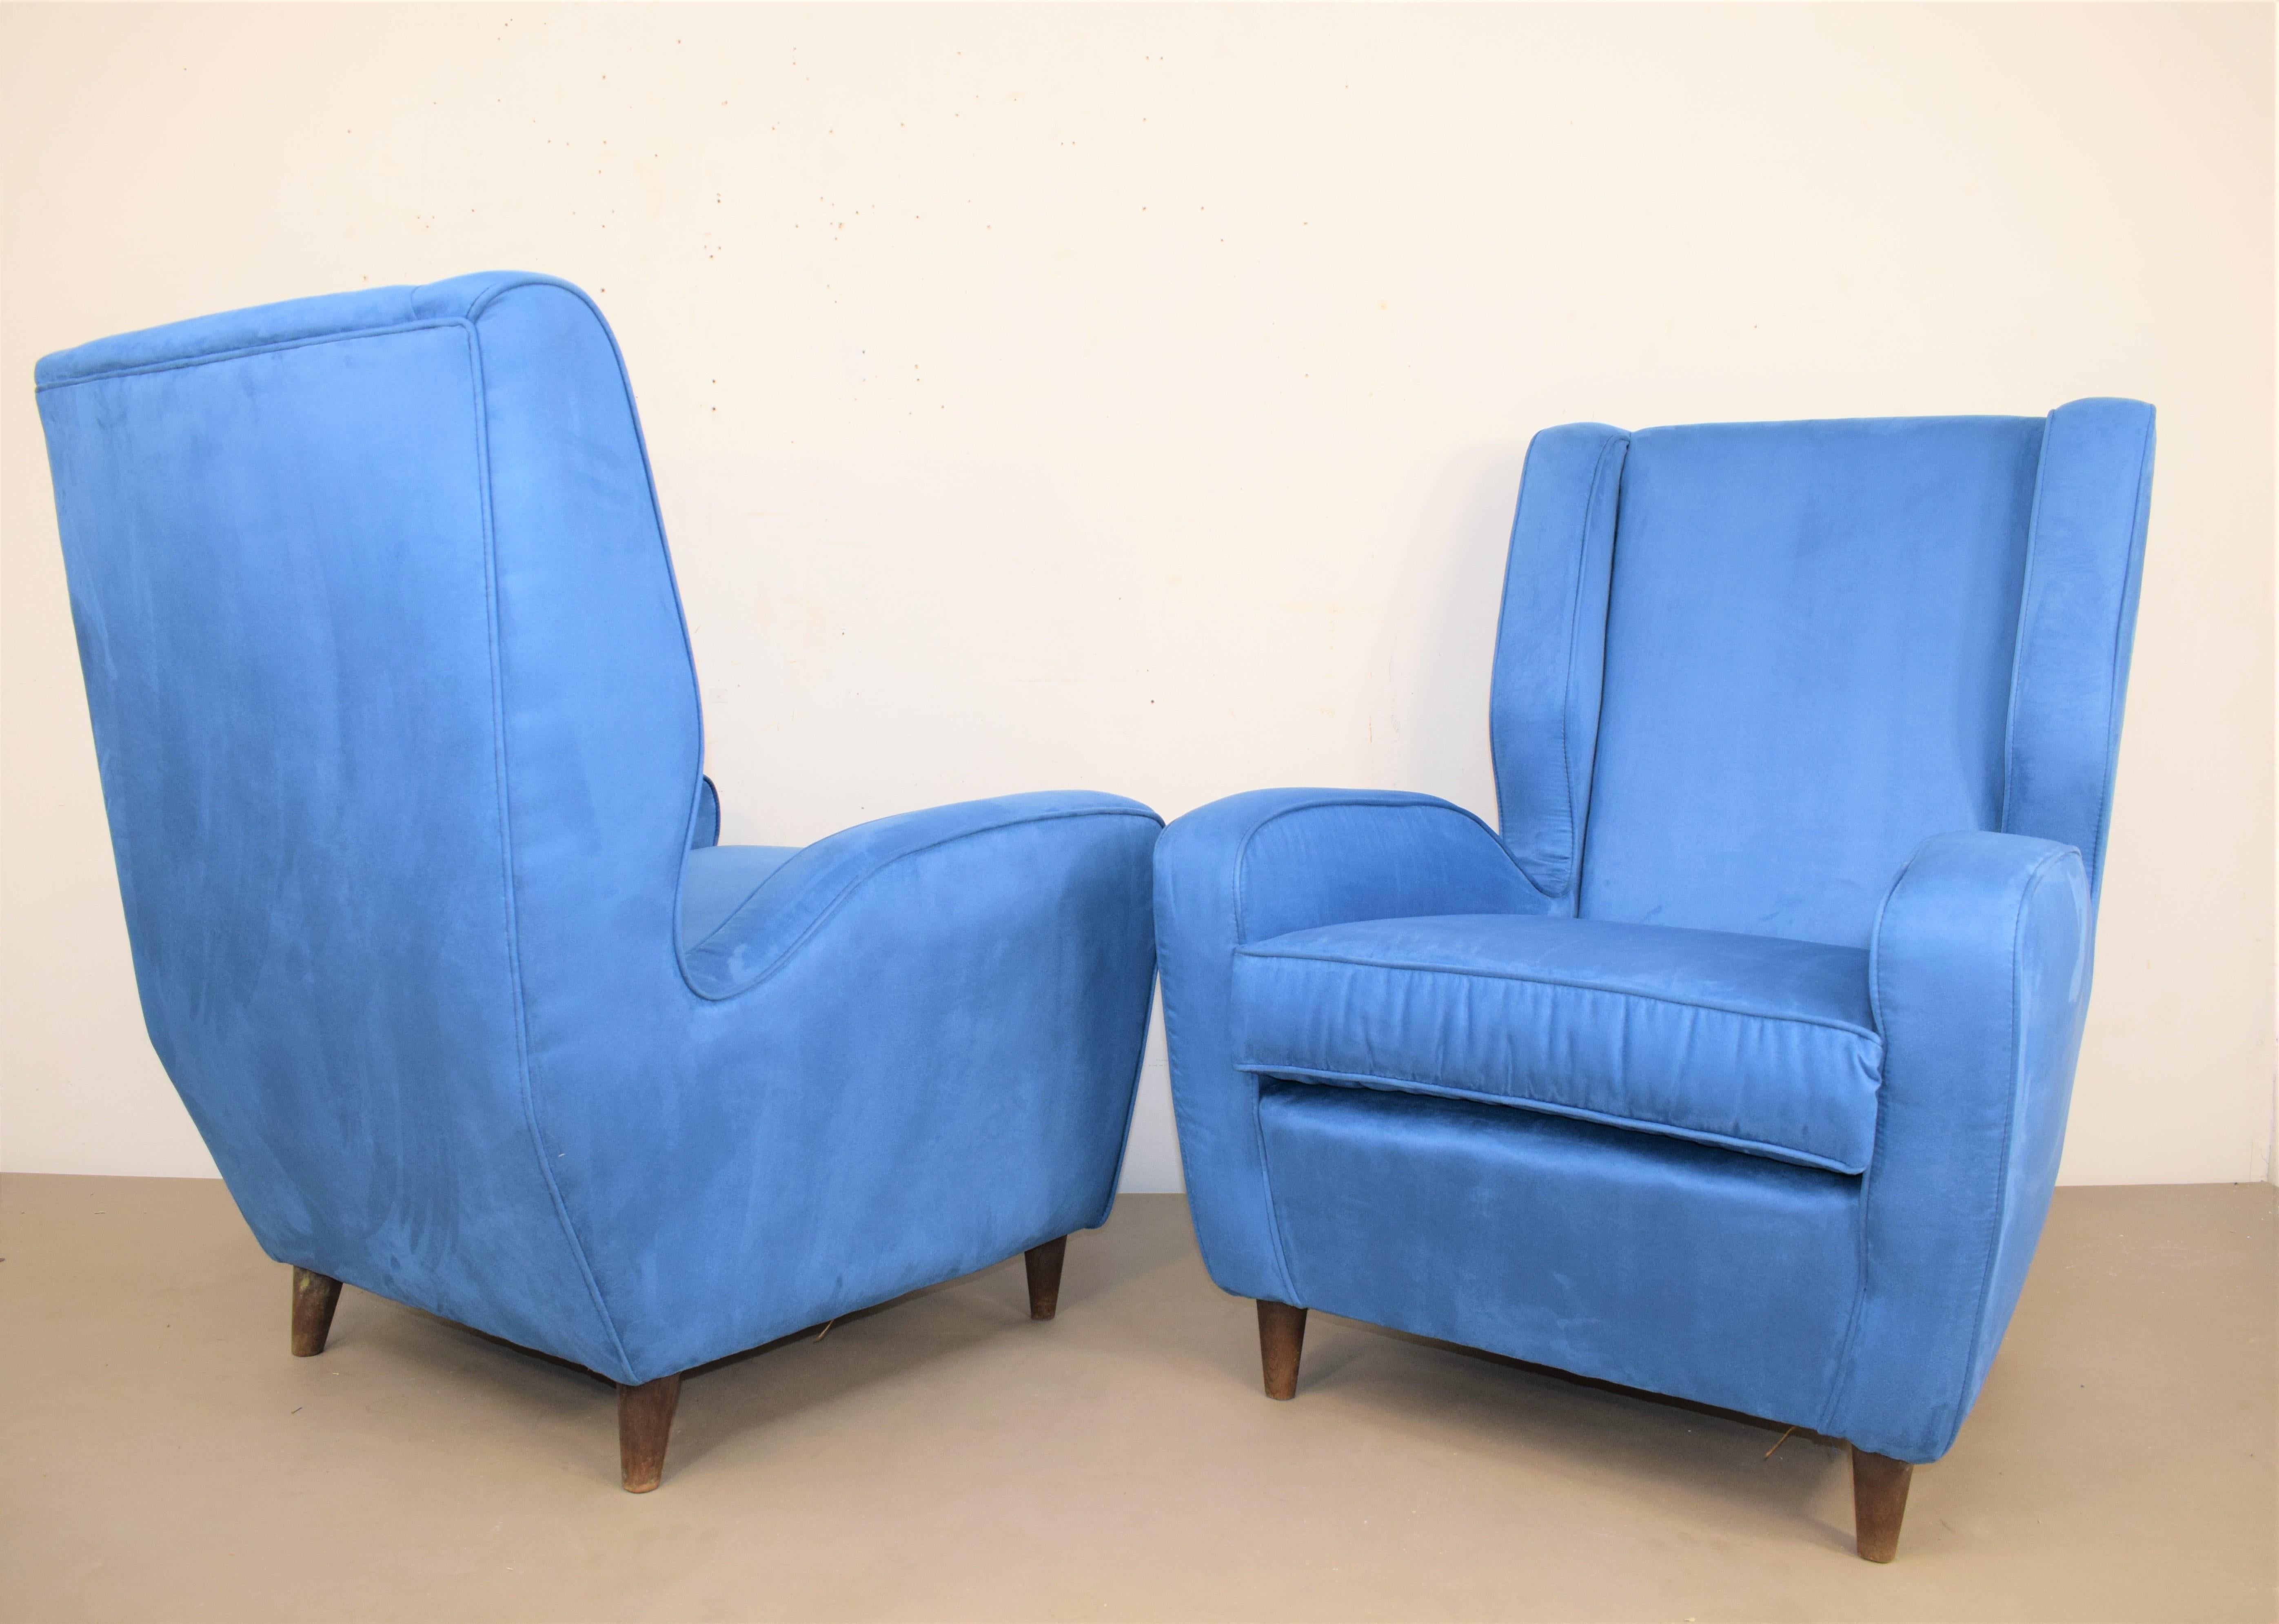 Paar Sessel, Melchiorre BEGA (im Stil von), italienische Produktion aus den 1950er Jahren.
Holz und Stoff.
Ausgezeichneter Zustand, keine Mängel (siehe Fotos).

Abmessungen: 
H: 95cm; T: 73cm; B= 78cm; H-Sitz = 46cm.